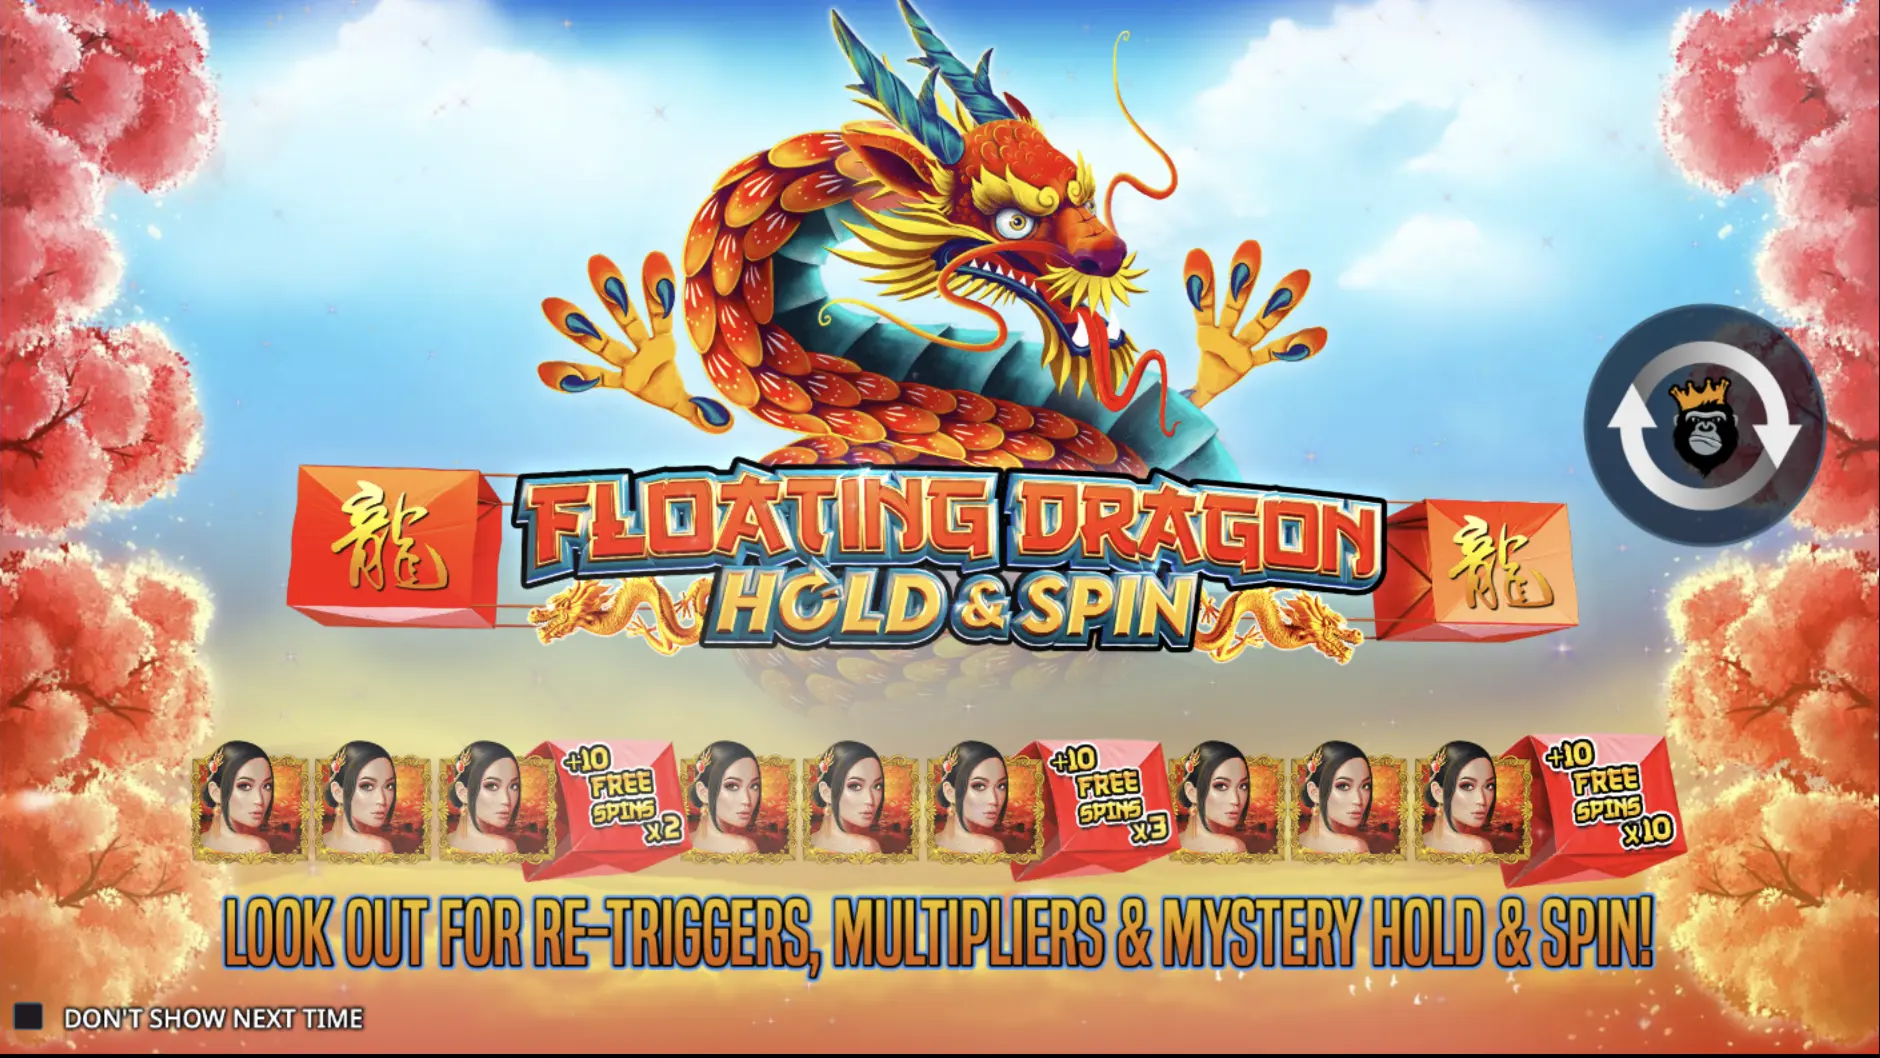 Thema und Grafik des Floating Dragon Spielautomaten